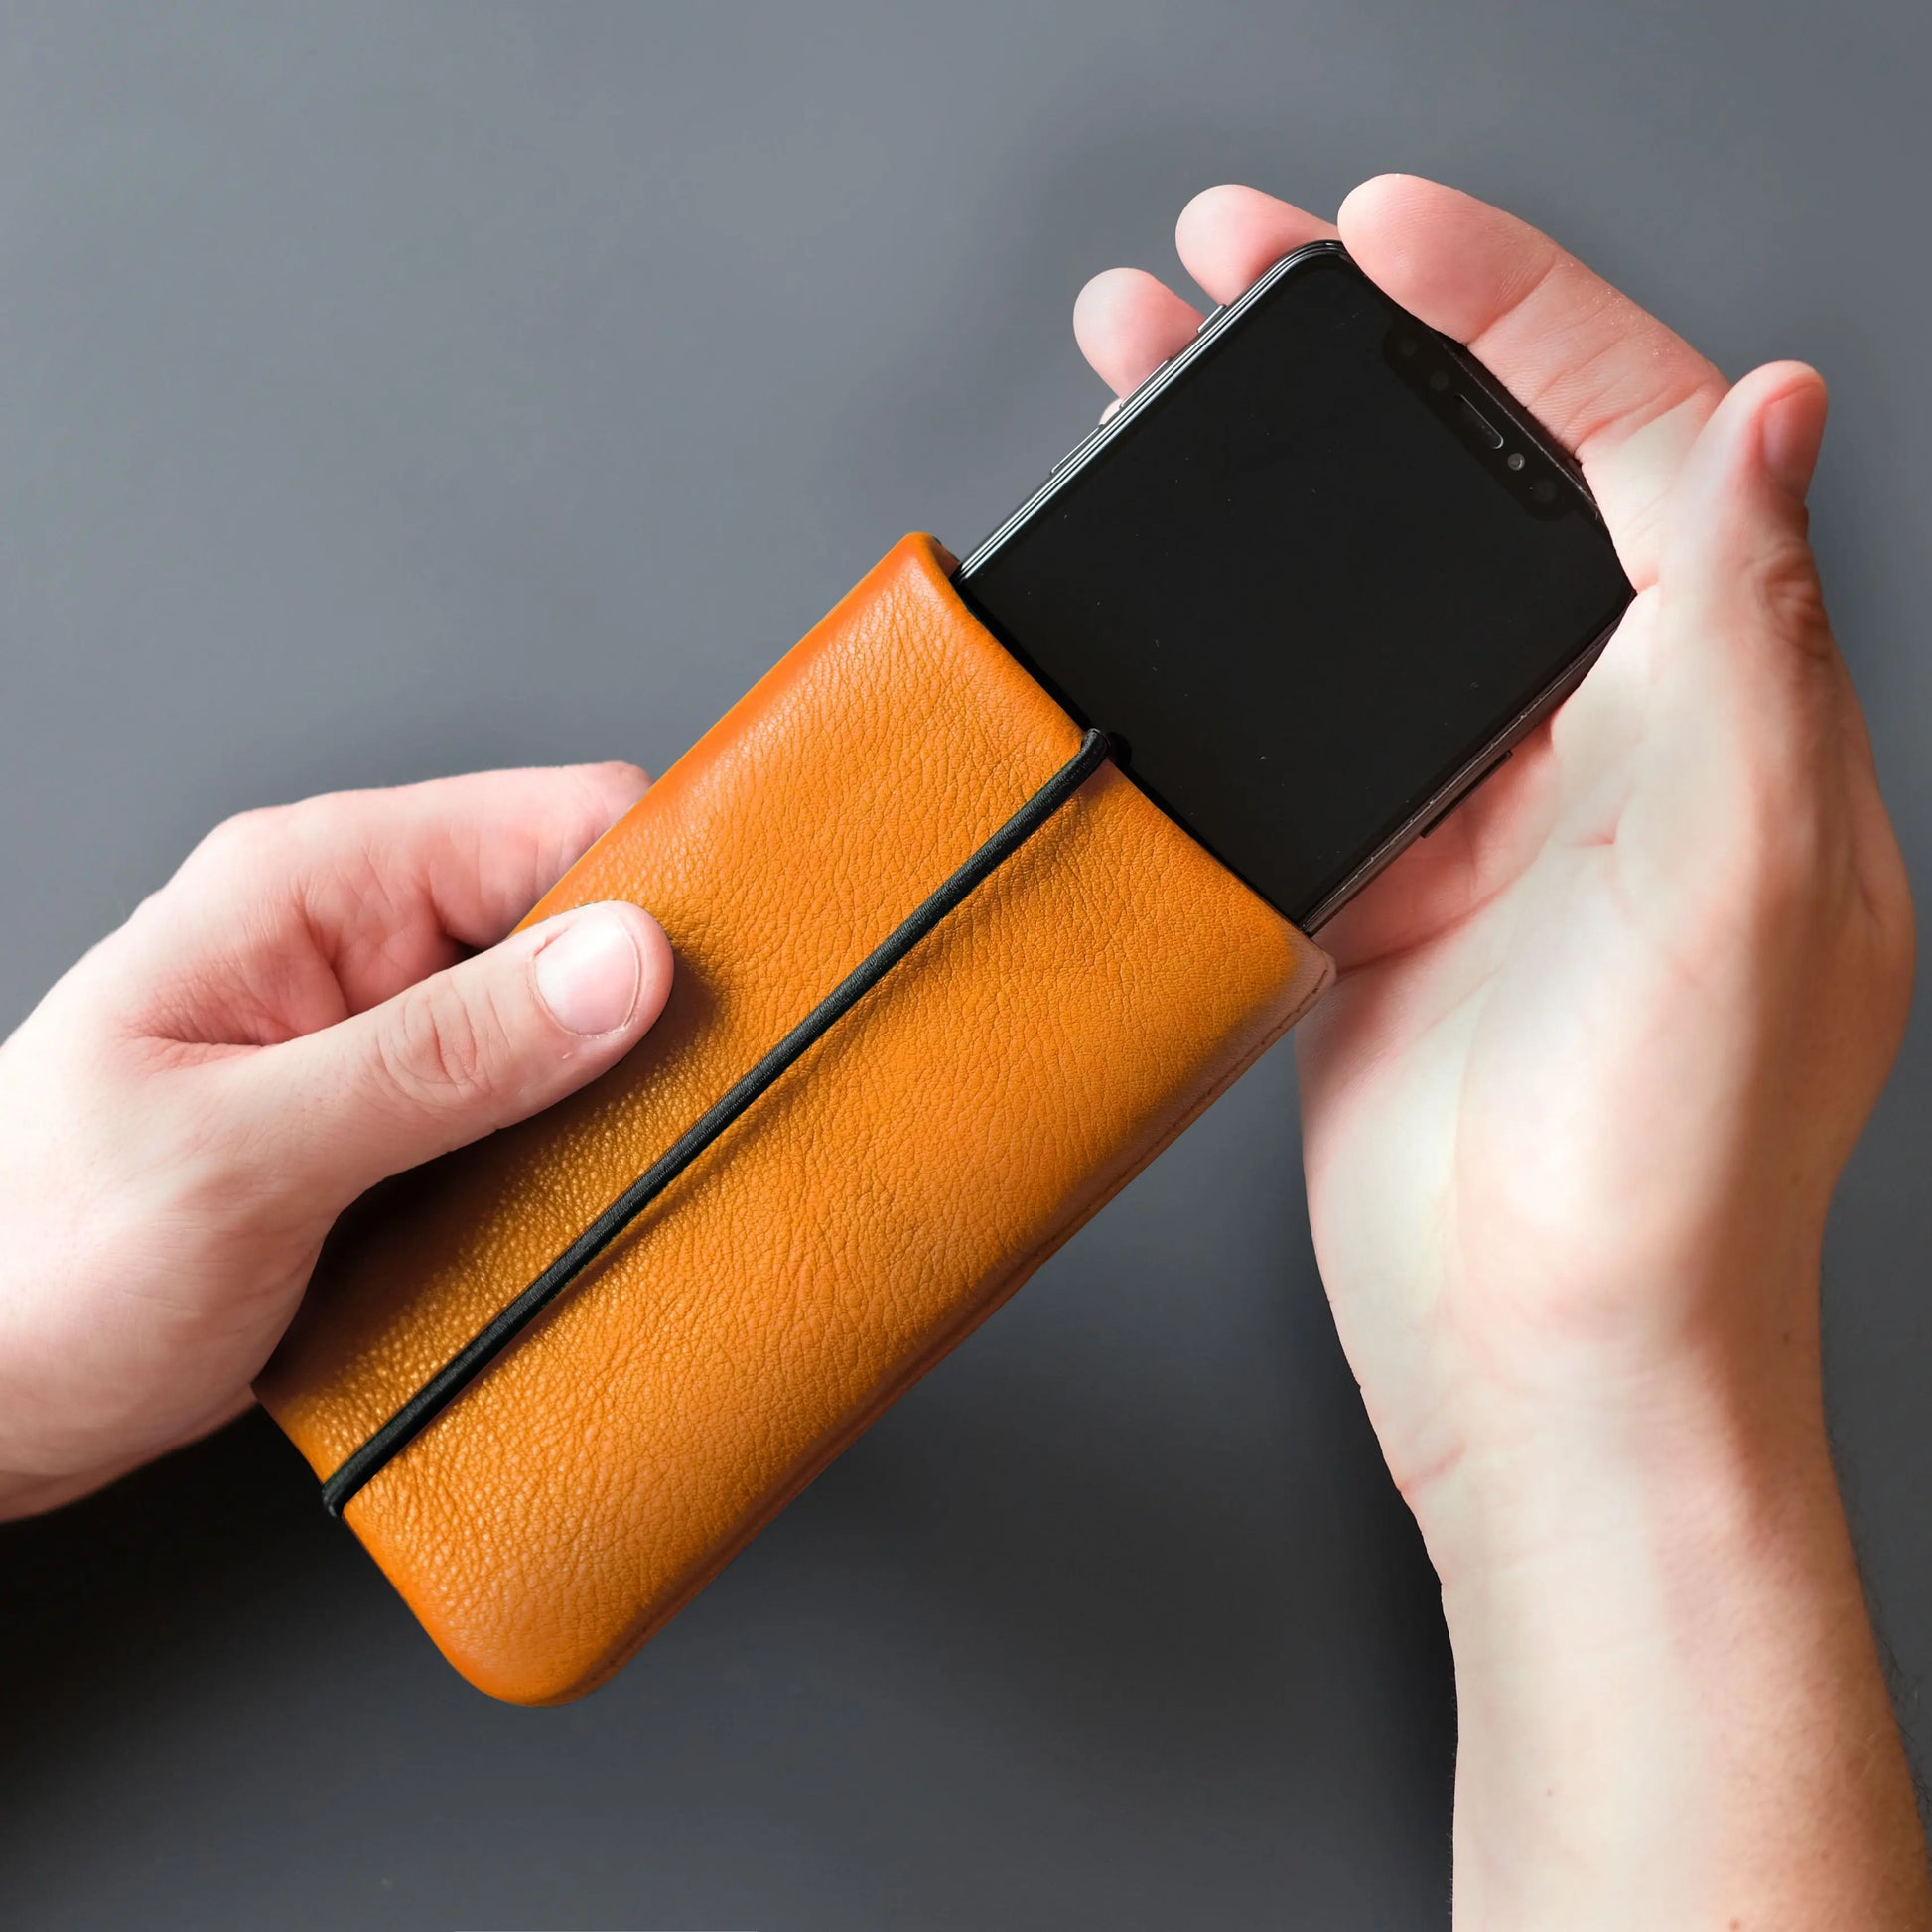 iPhone-Hülle aus orangefarbenem Leder wird mit Smartphone verwendet